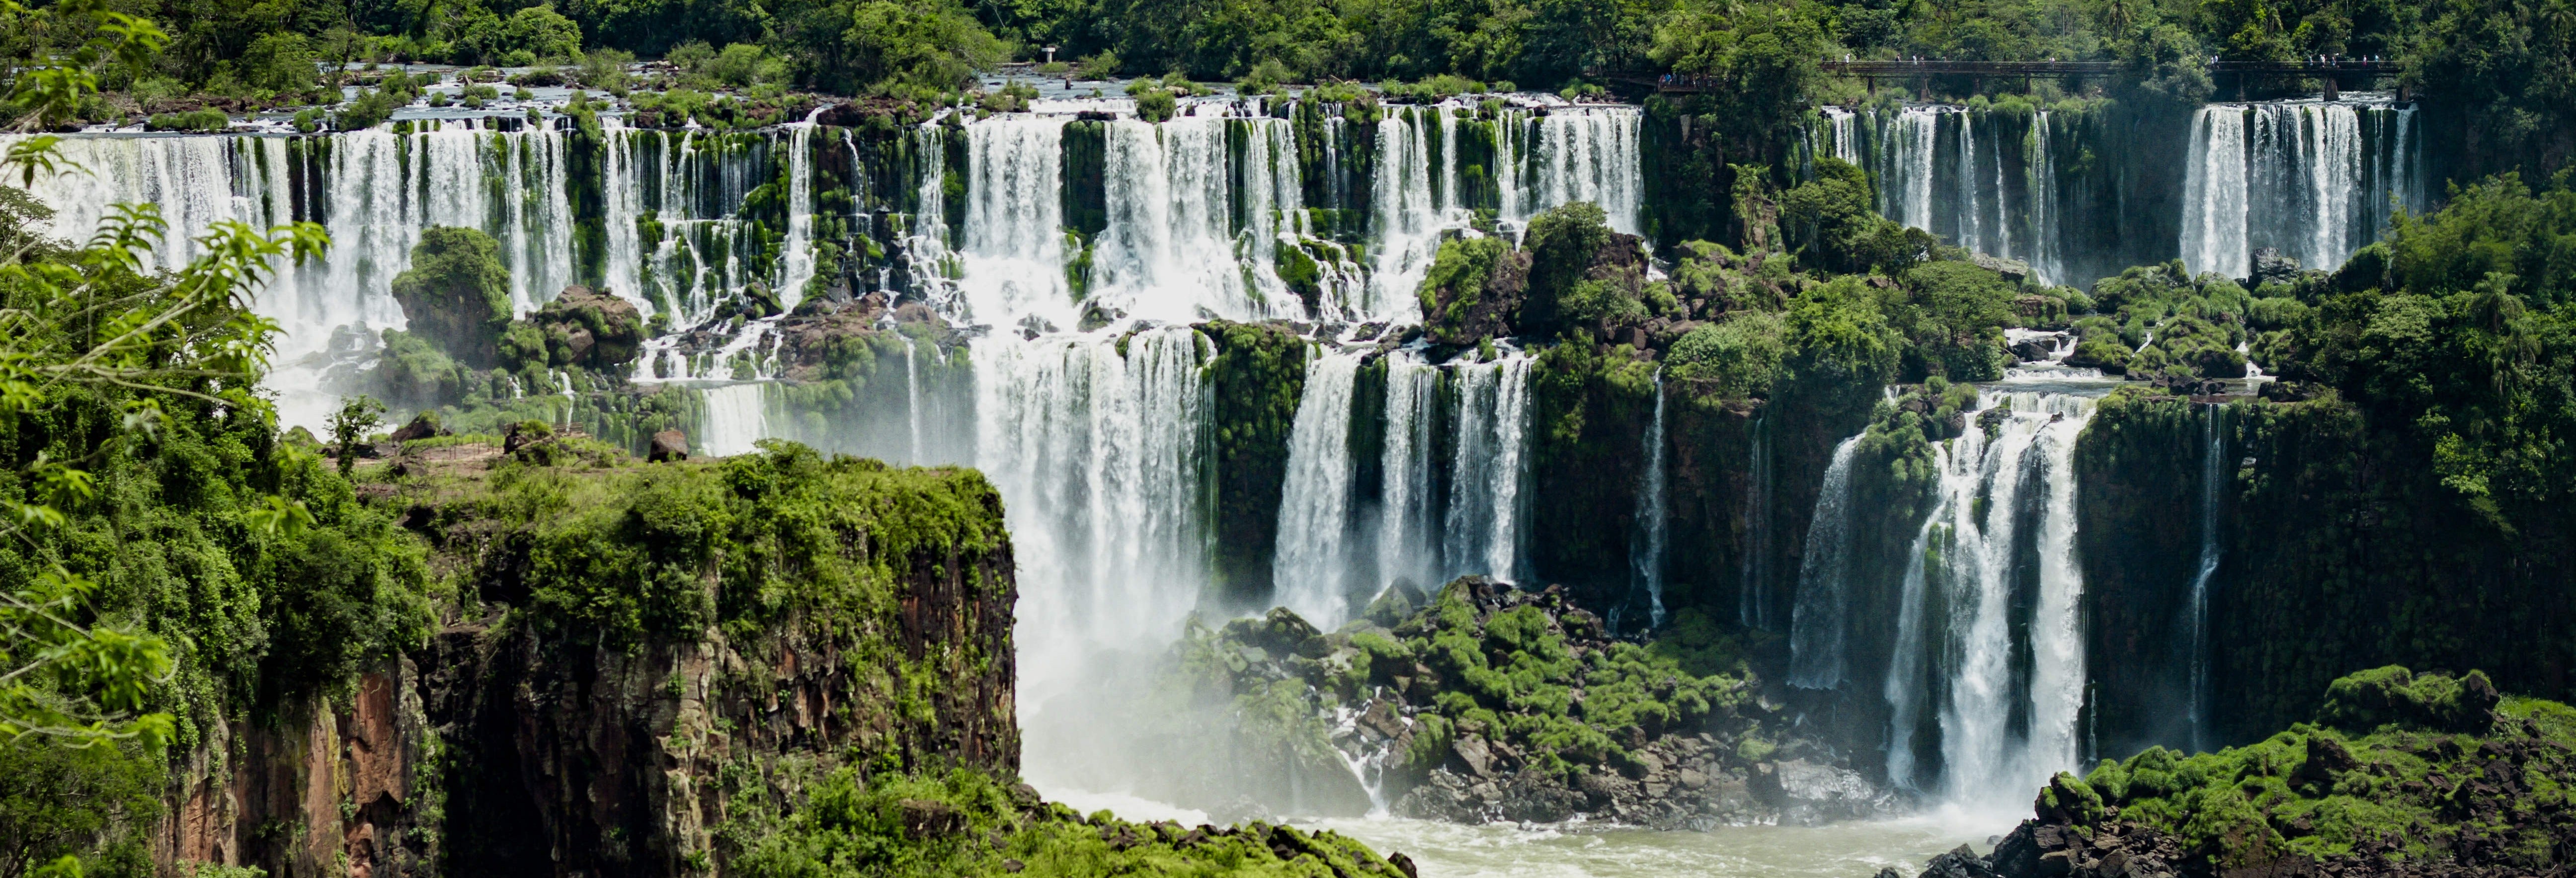 Ingresso do lado brasileiro das Cataratas do Iguaçu